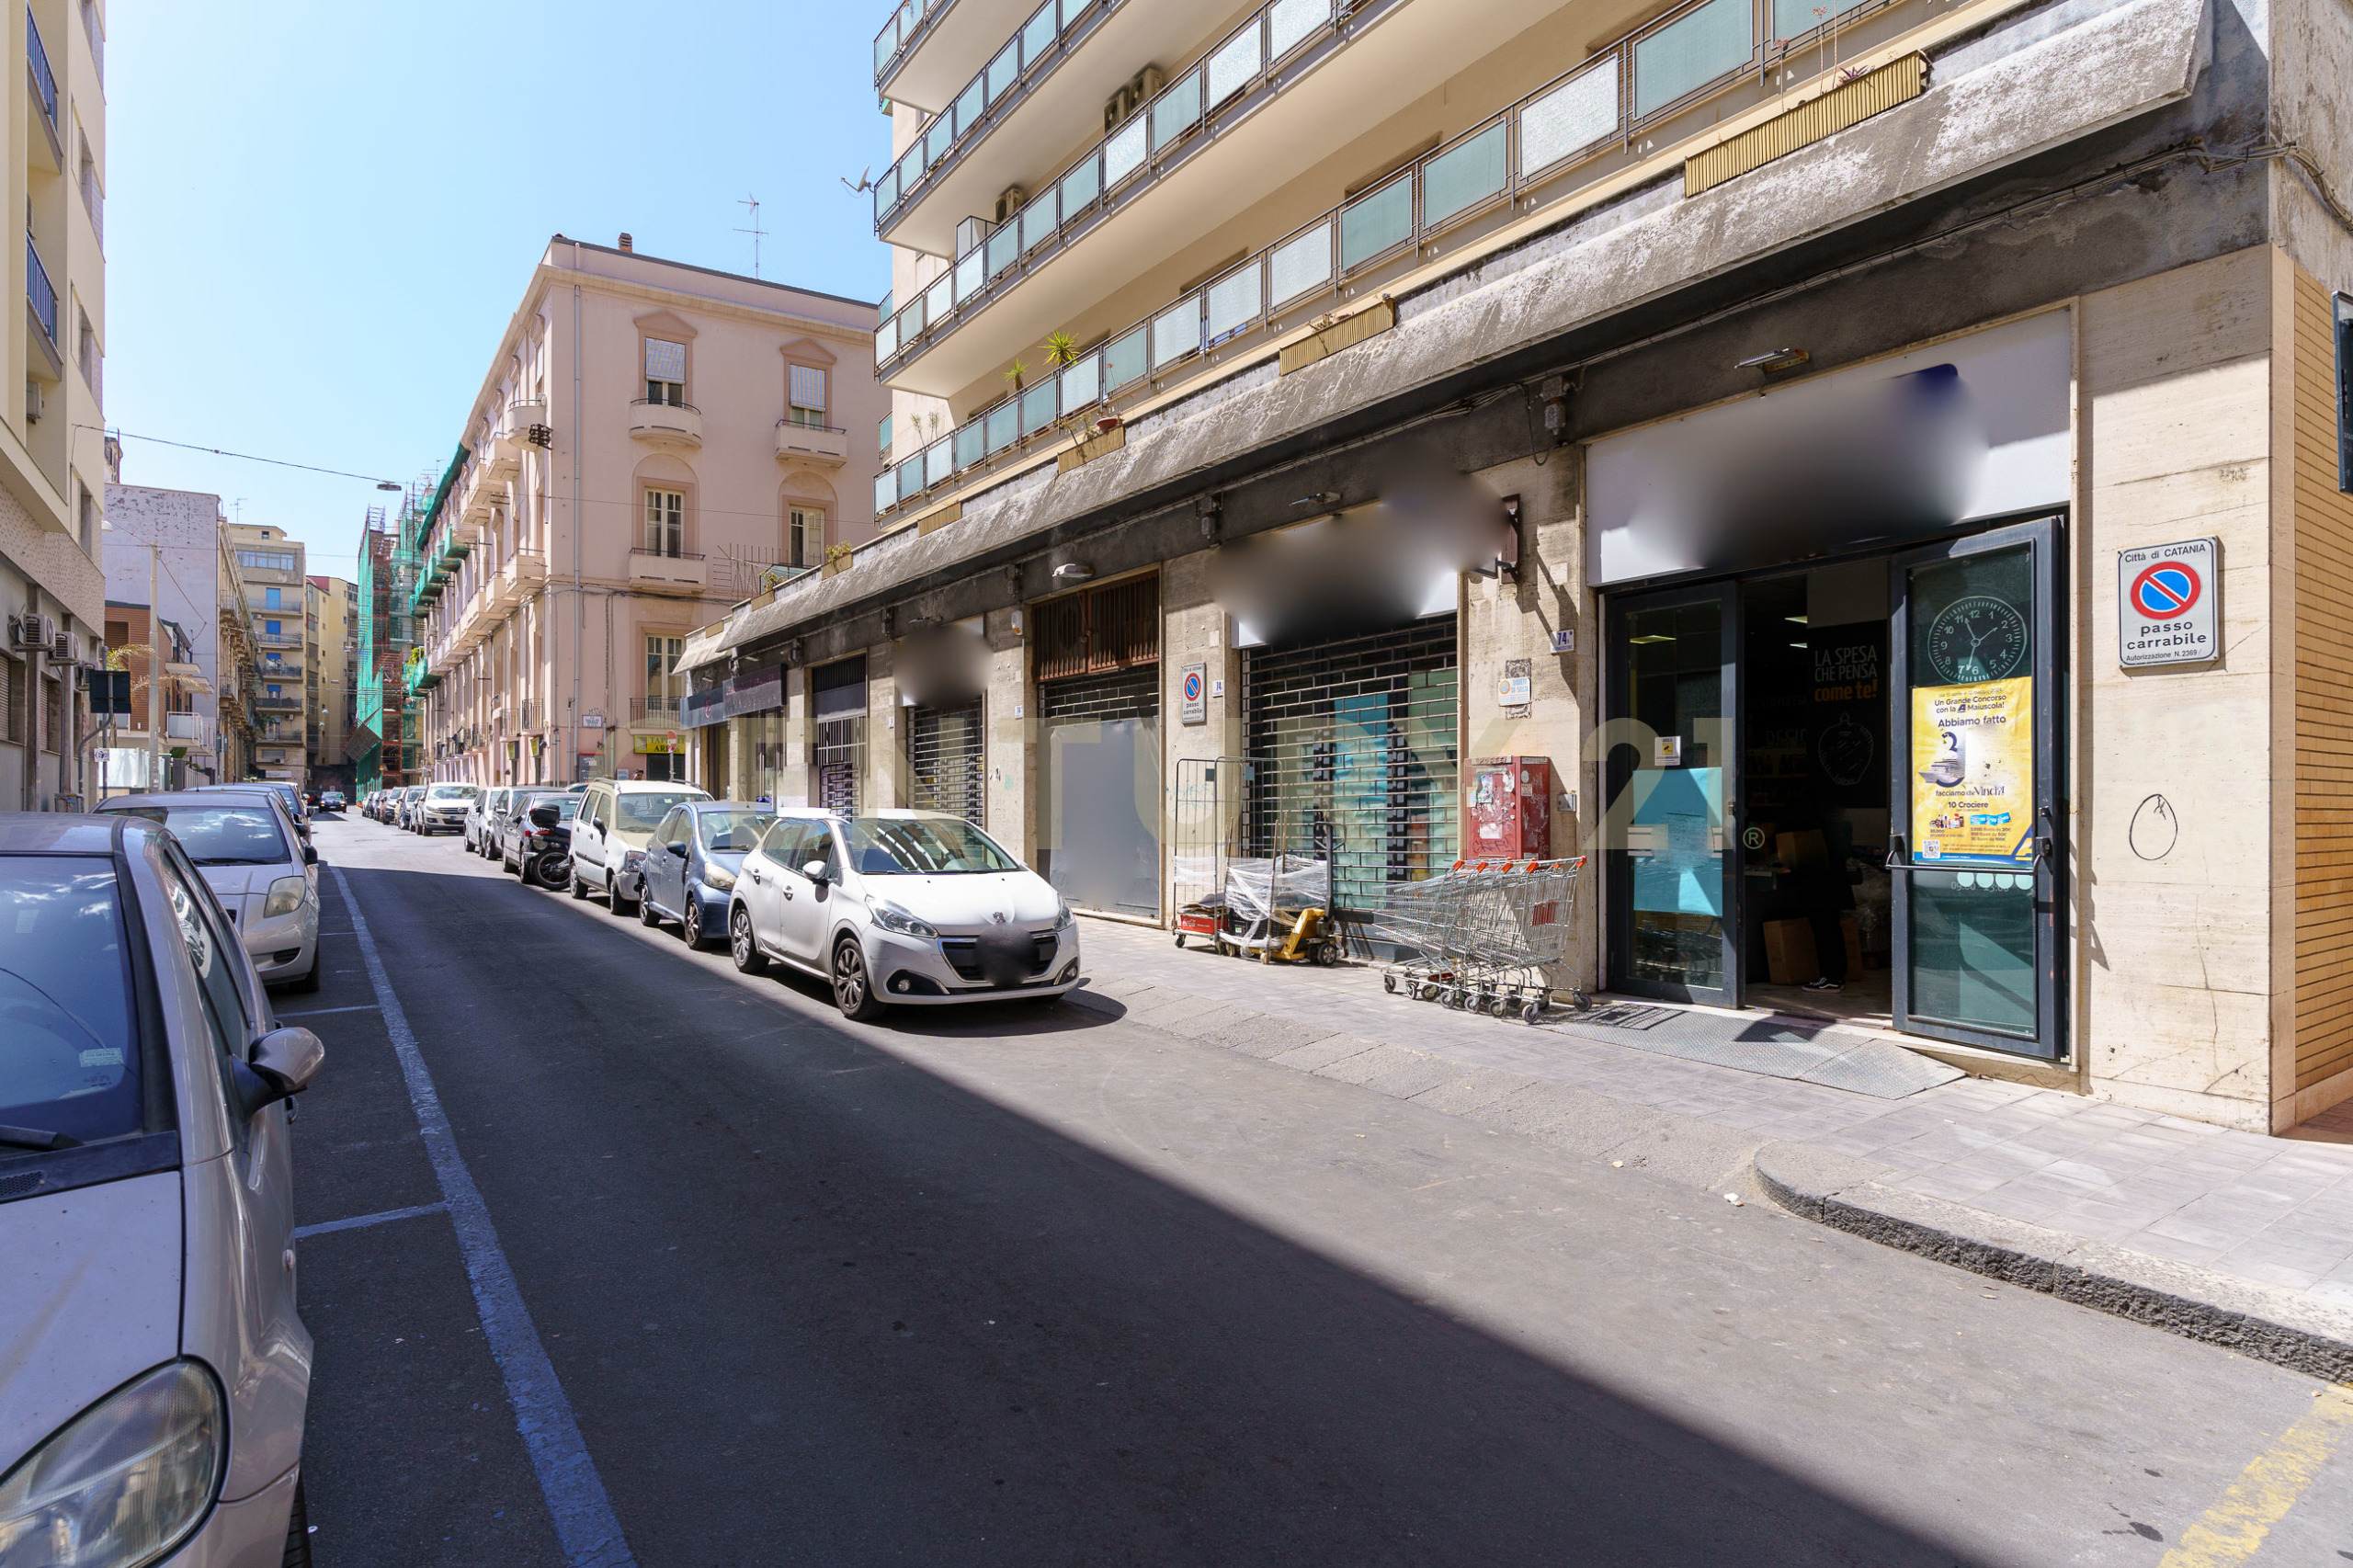 Locale commerciale in vendita in via francesco riso, Catania